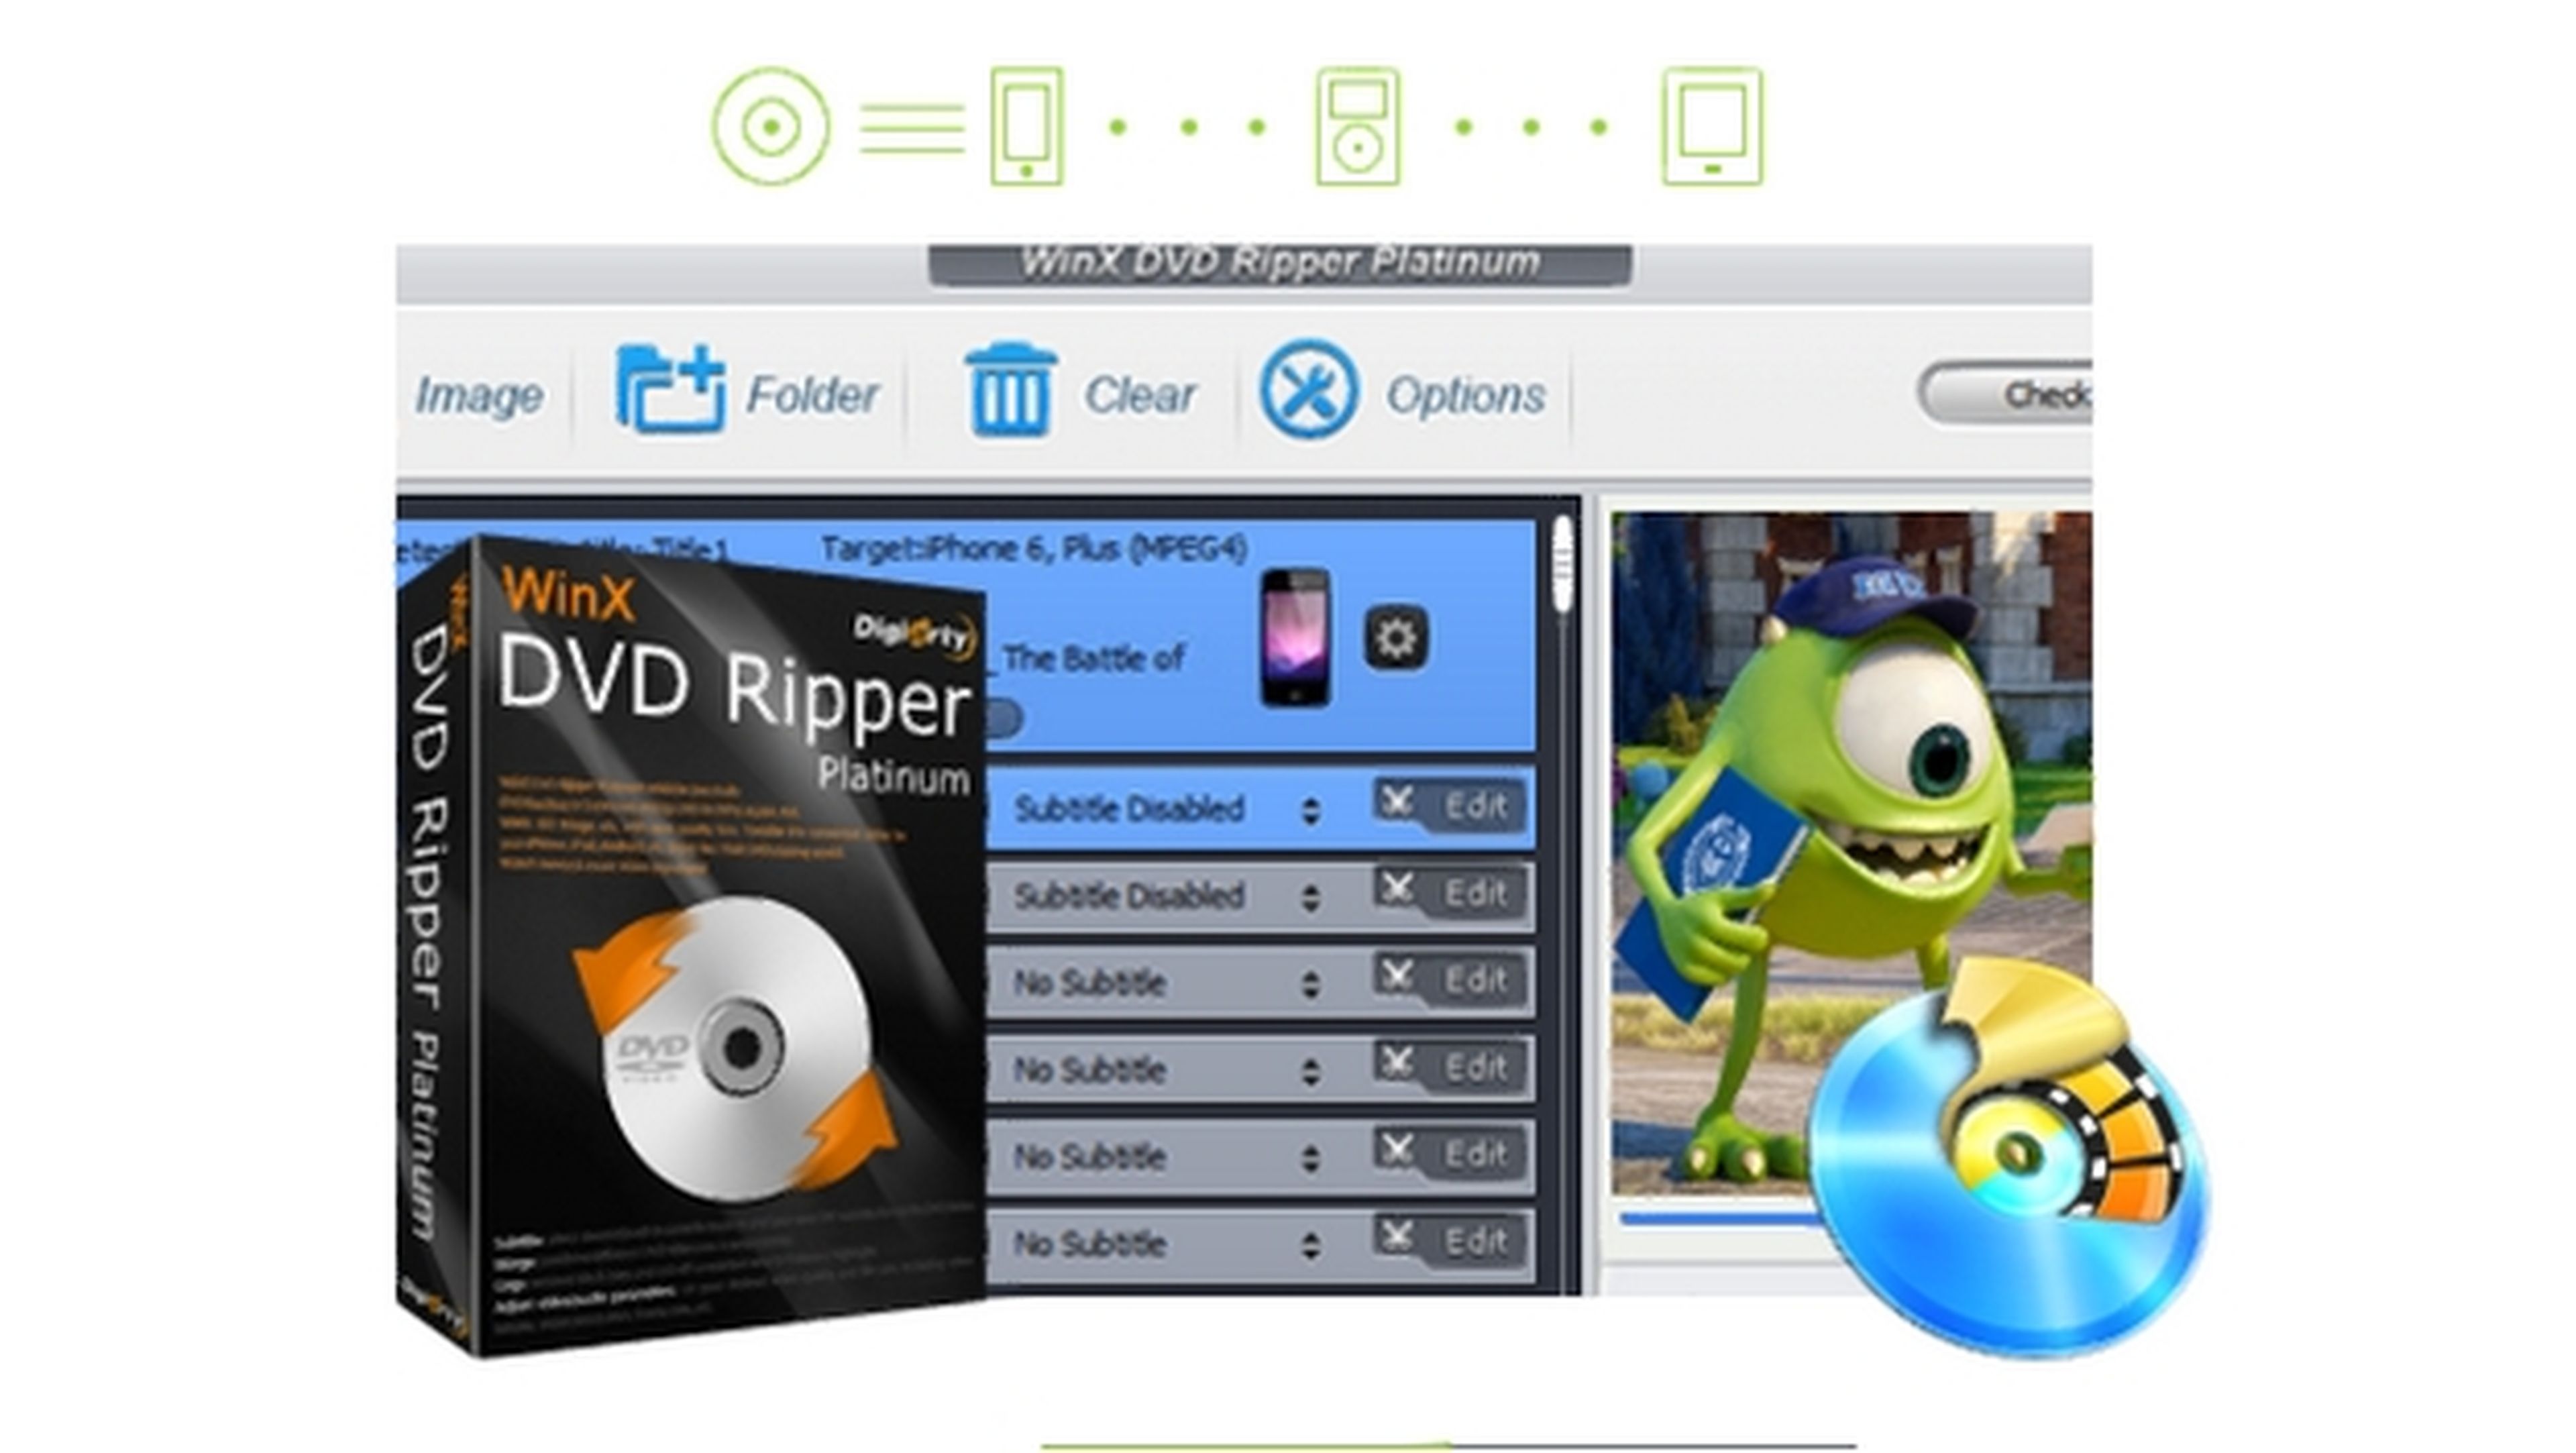 Descomponer Flor de la ciudad Ingresos Oferta limitada: WinX DVD Ripper Platinum, convierte tus DVDs a MP4, AVI,  ISO gratis | Computer Hoy